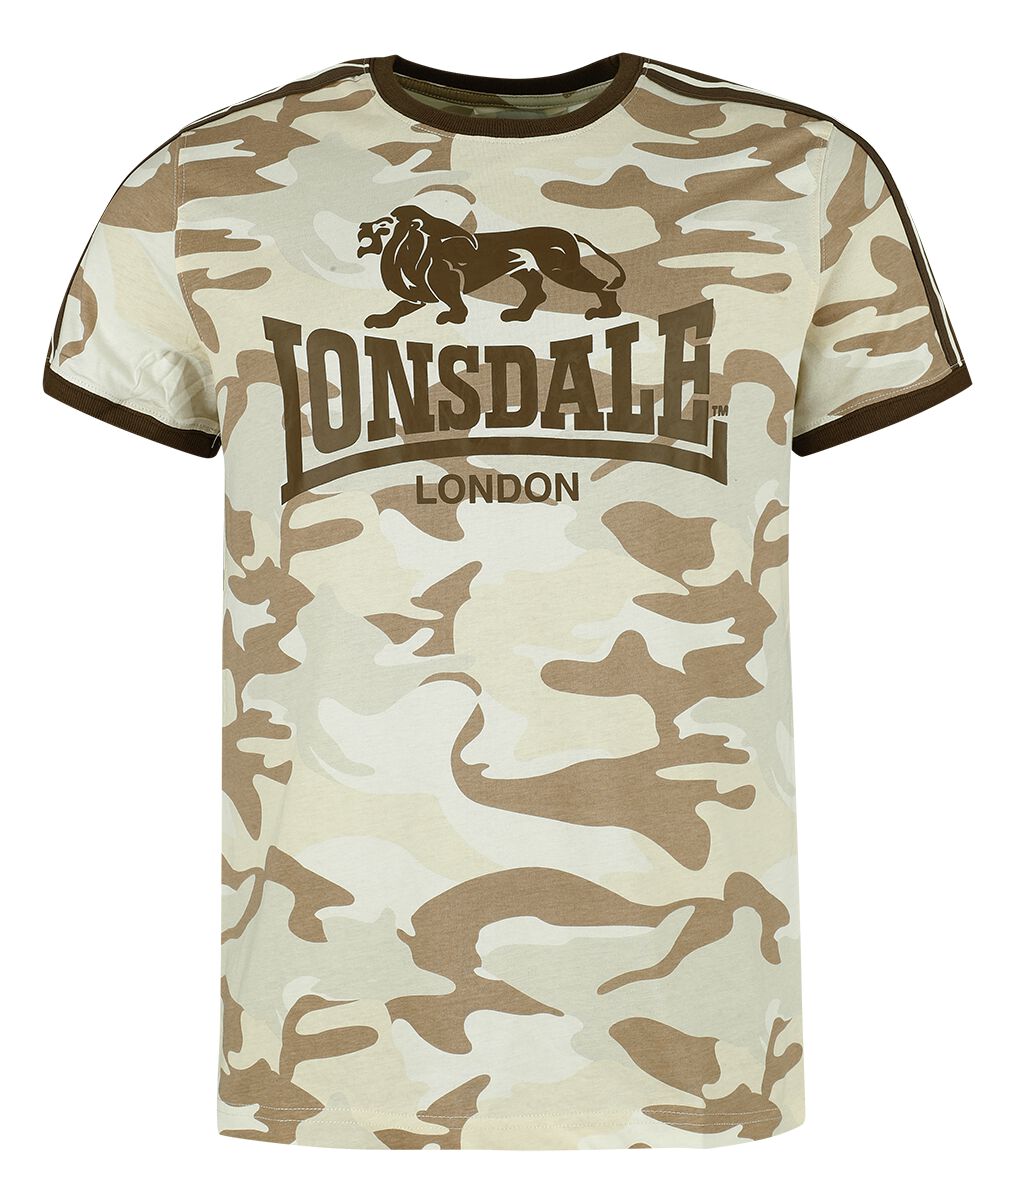 Lonsdale London - Camouflage/Flecktarn T-Shirt - CREGNEASH - S bis XXL - für Männer - Größe S - sandcamo